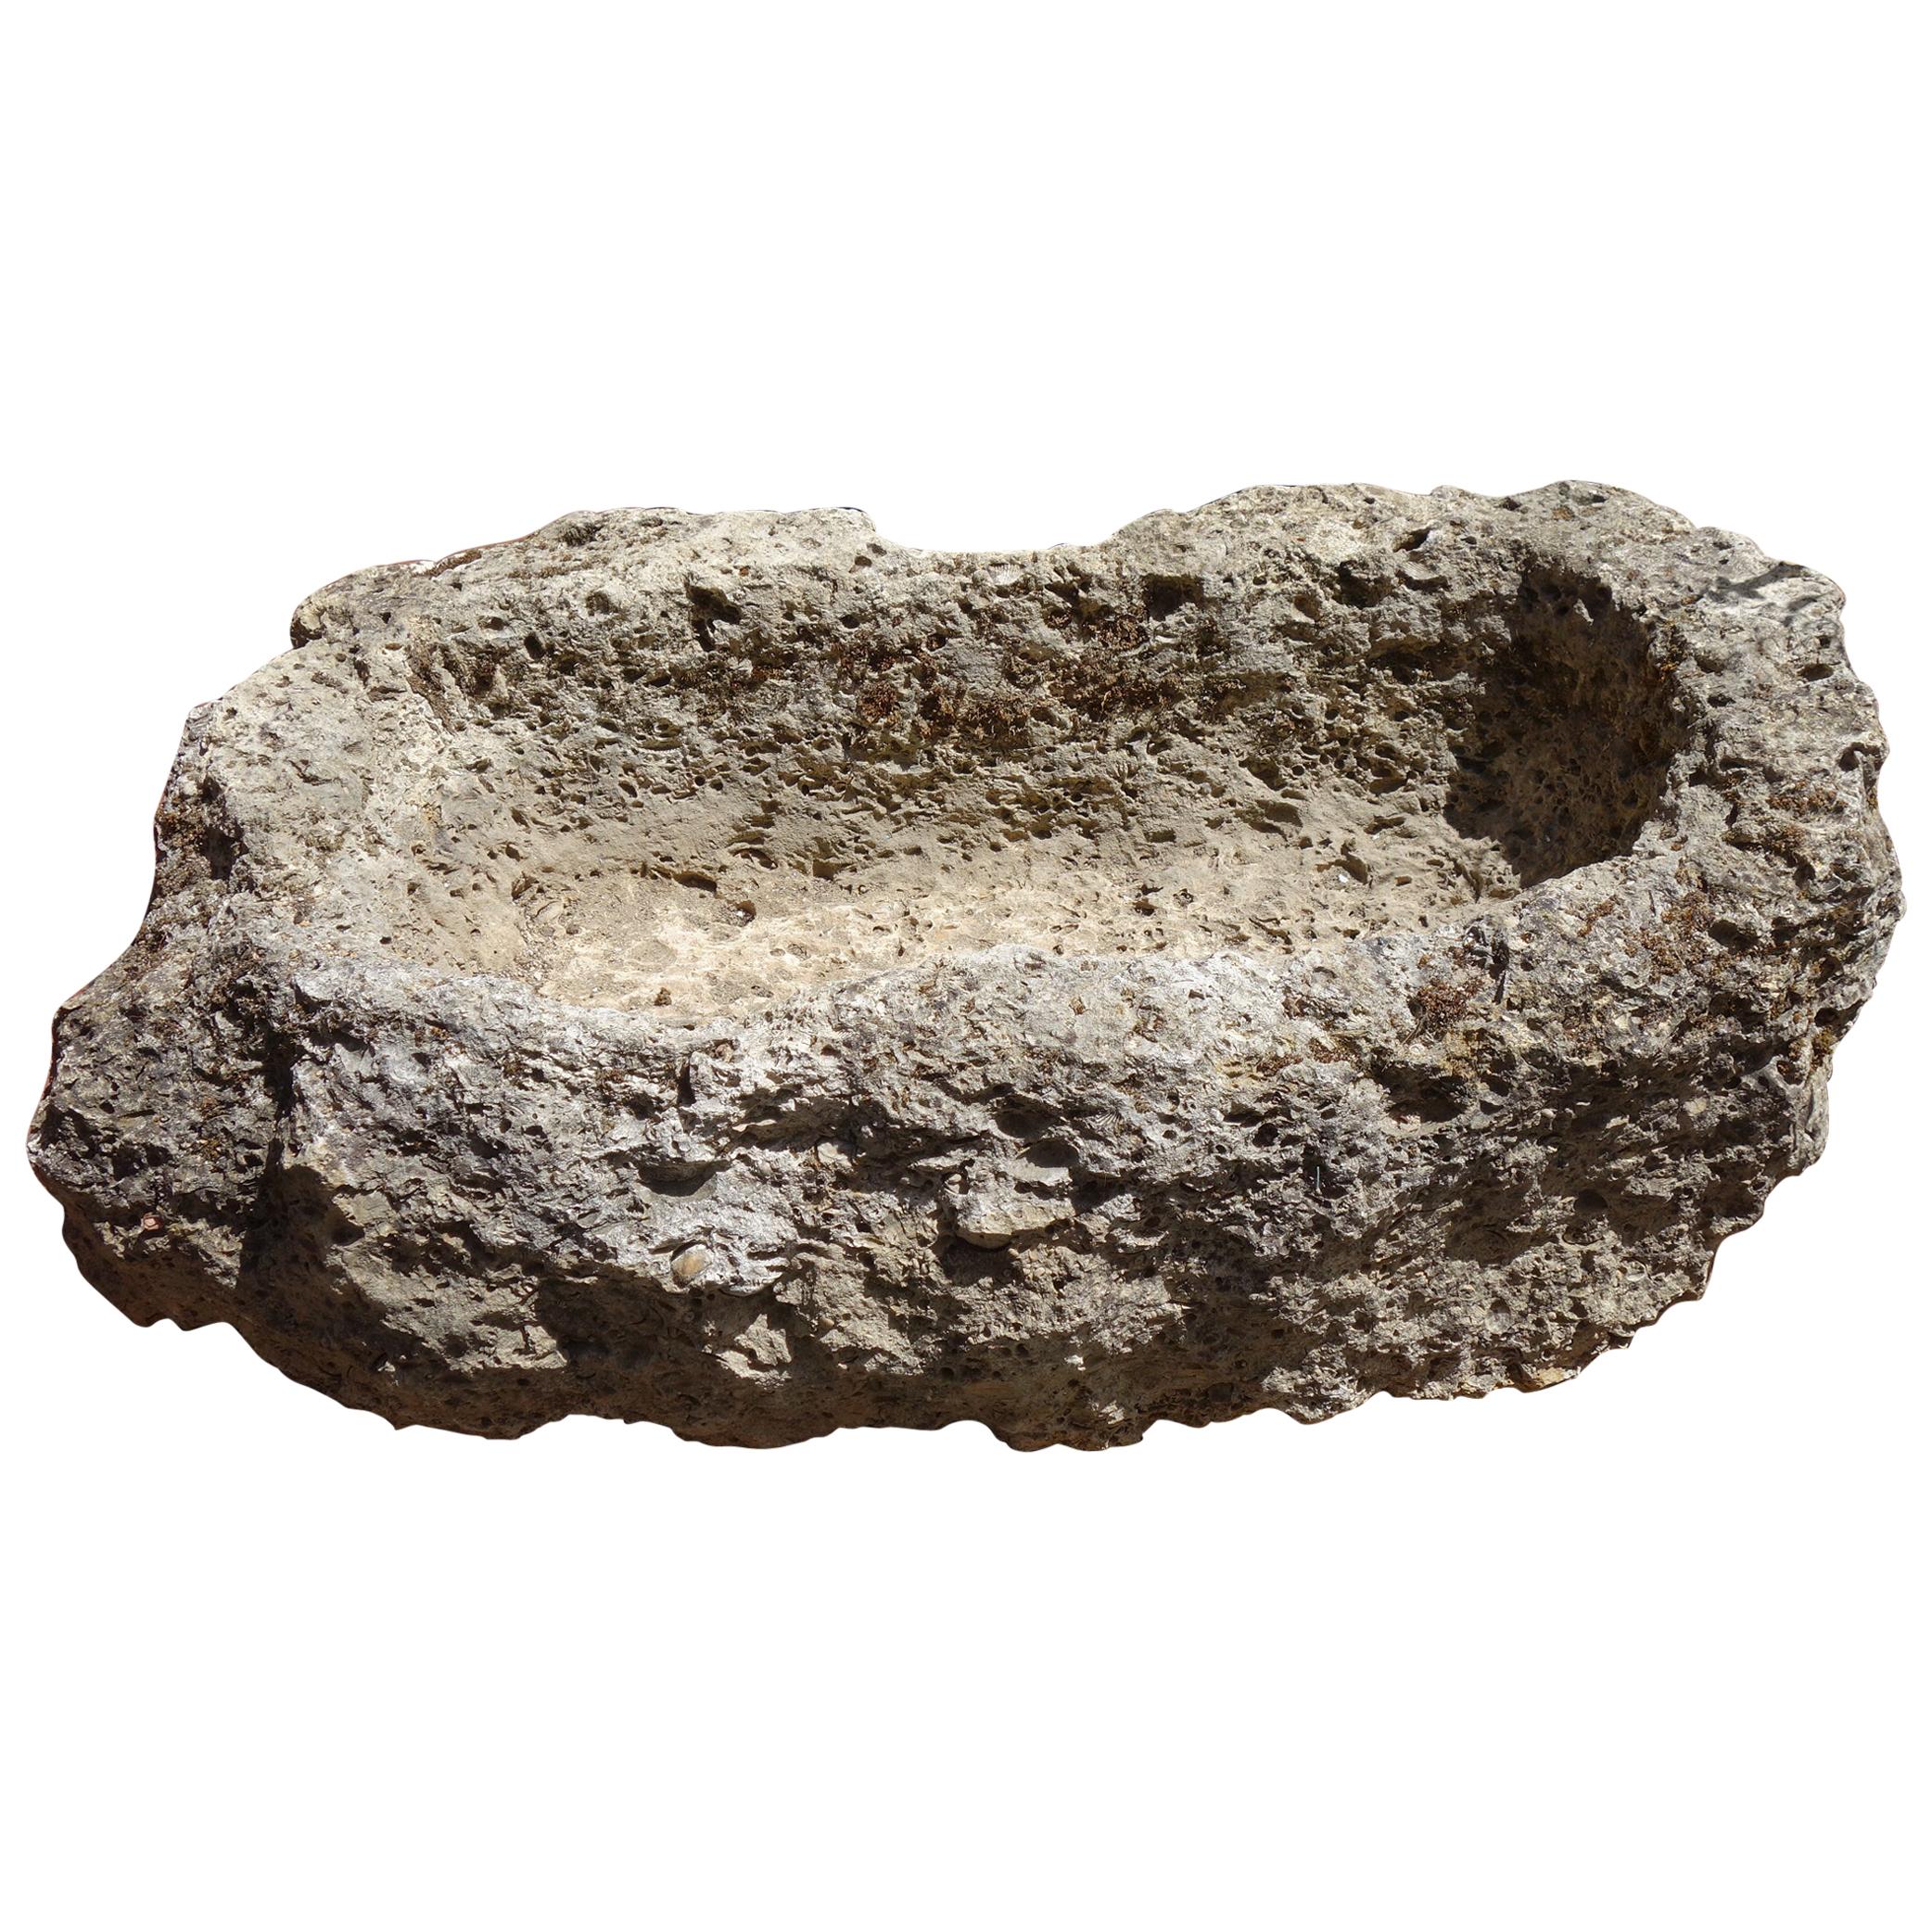 Ancienne auge italienne primitive en pierre fossile sculptée à la main dans un calcaire ancien